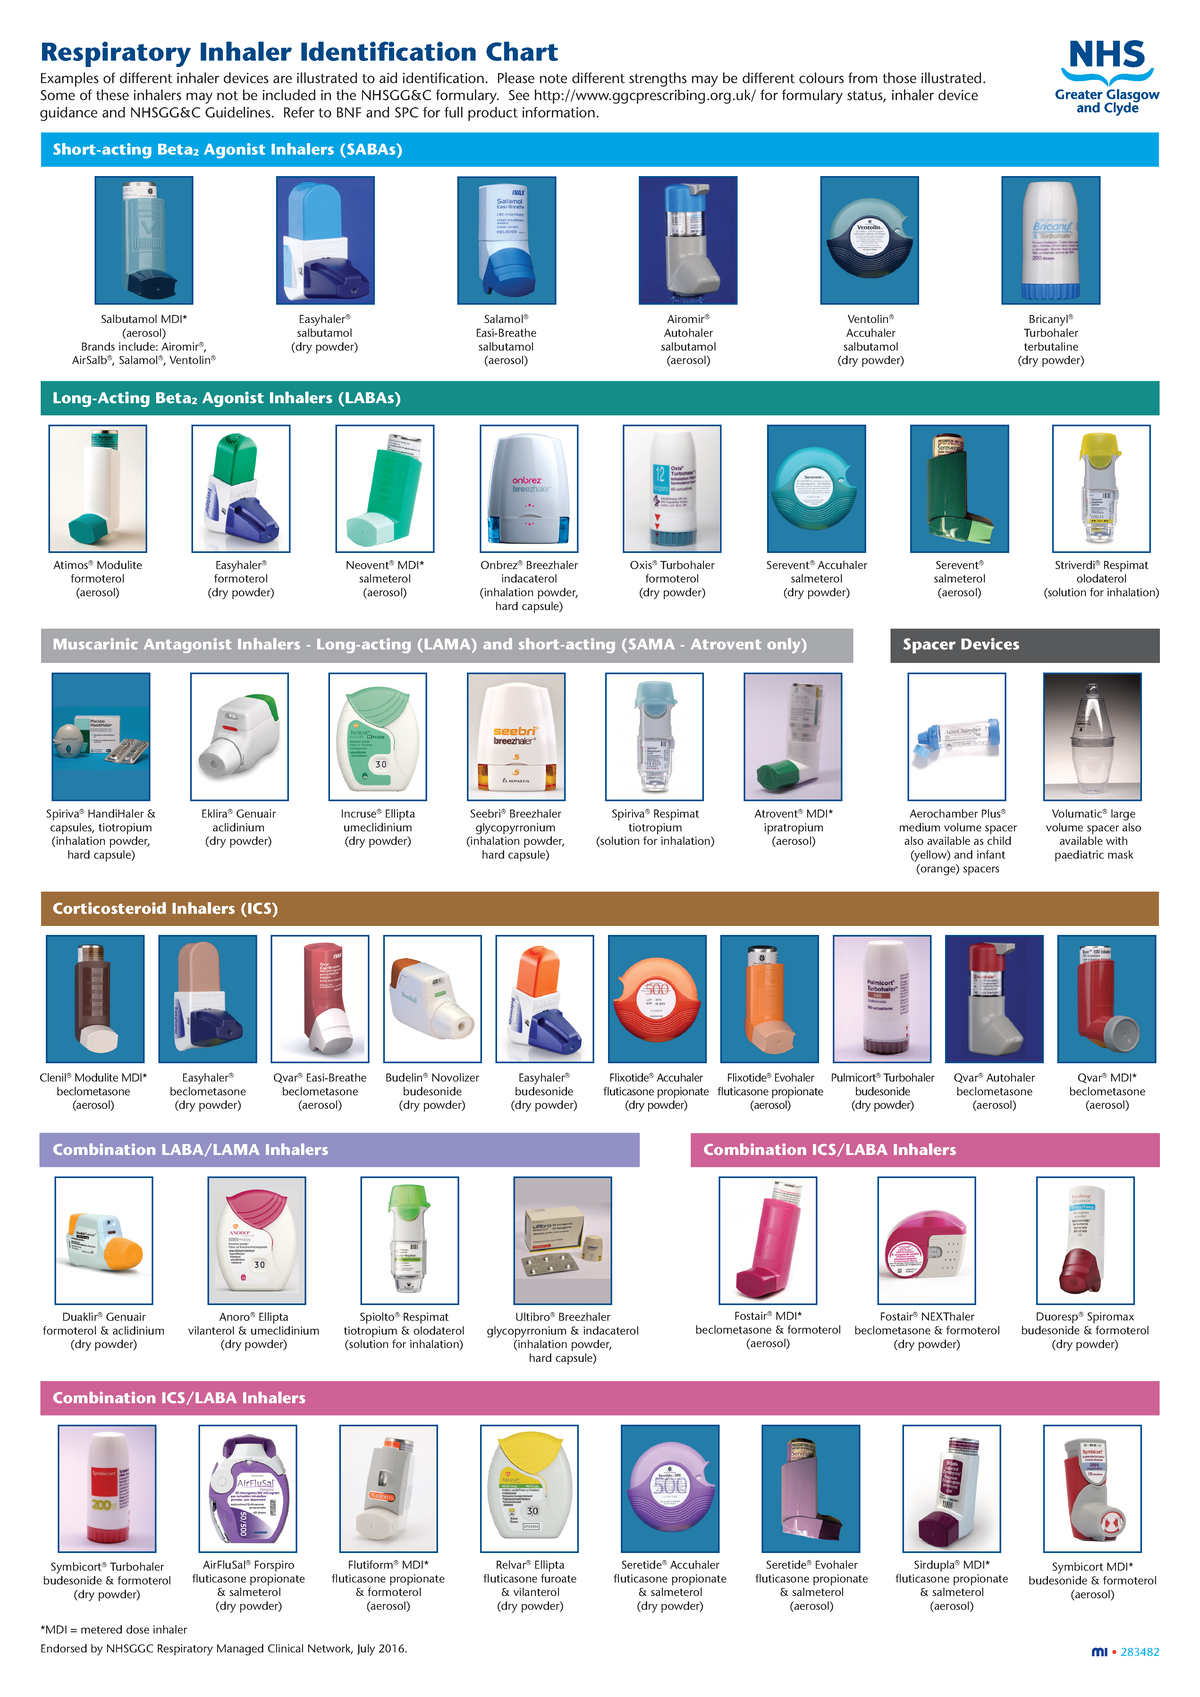 Inhaler id chart 1701 Respiratory Inhaler Identification Chart